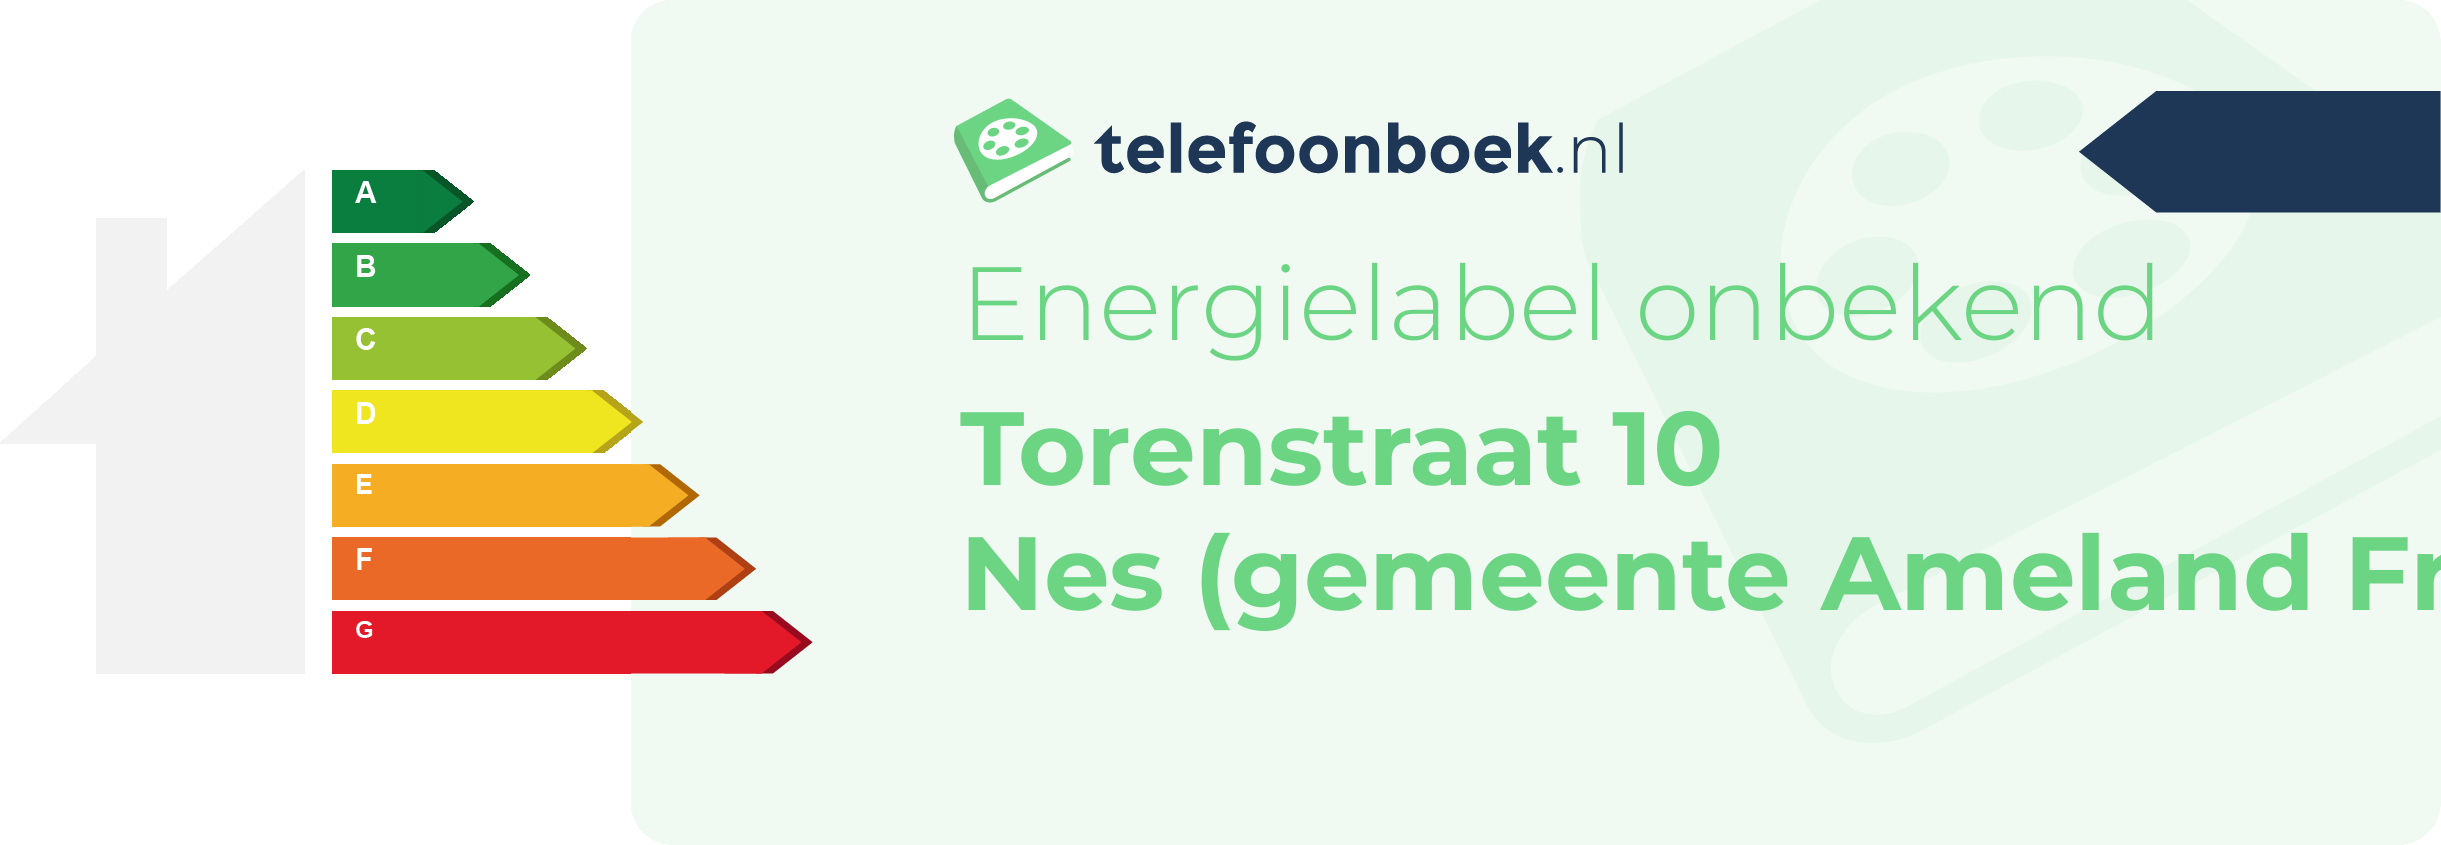 Energielabel Torenstraat 10 Nes (gemeente Ameland Friesland)